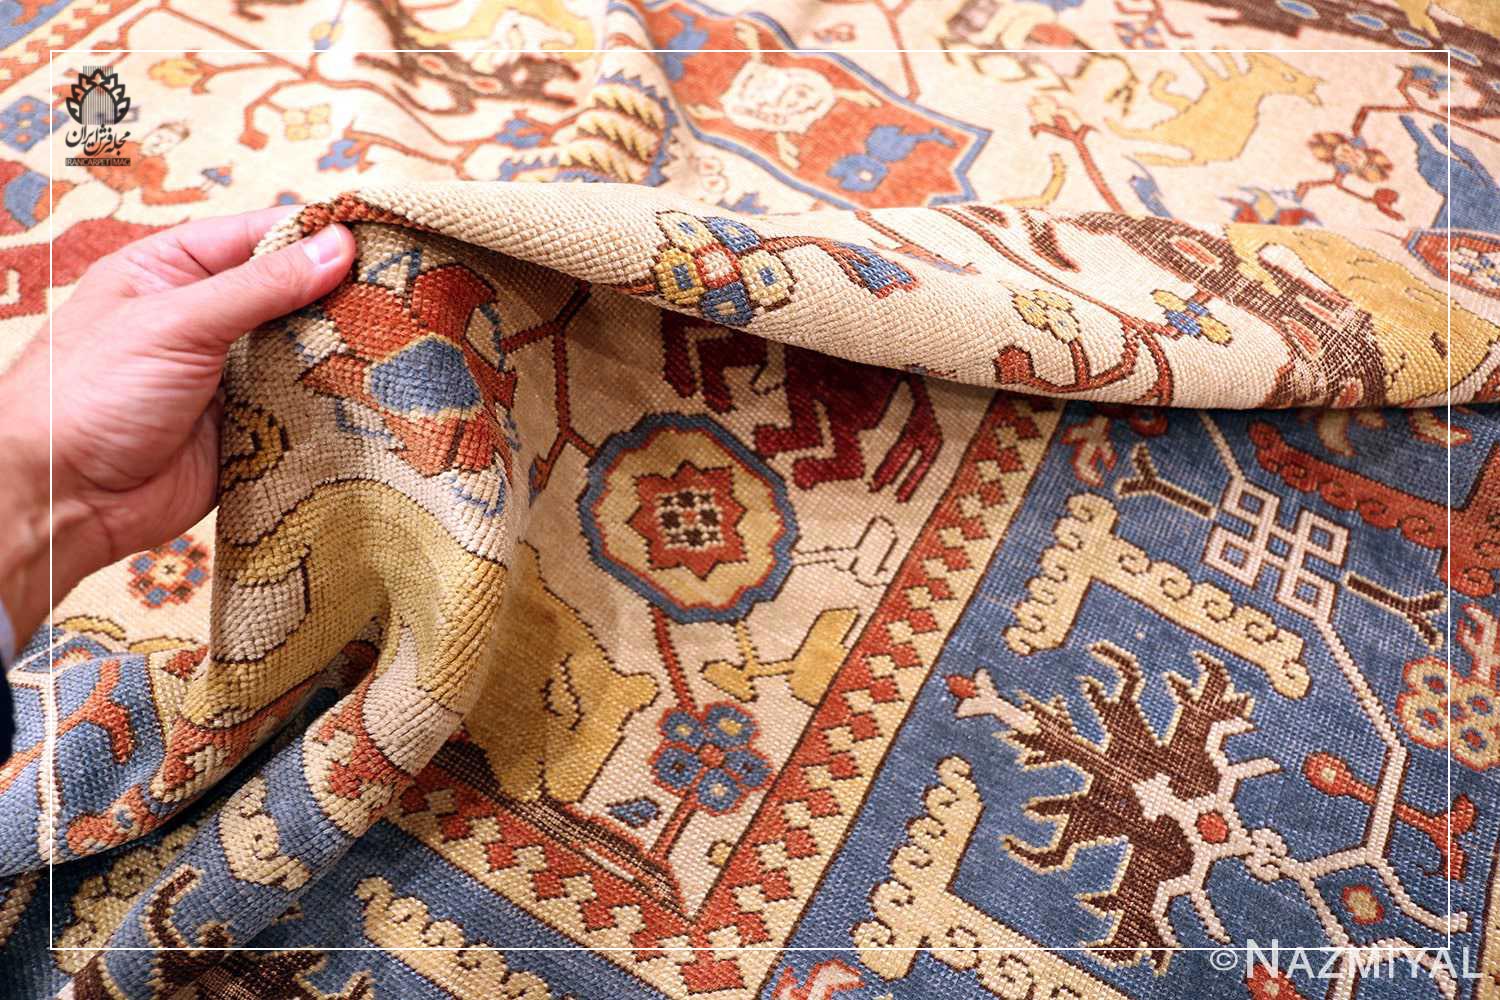 این فرش با الهام از طرح و نقش فرش‌های ایرانی در سال 1900م در ترکیه بافته و به دست تئودور تودوک کهنه شده است و هم اکنون در مجموعه نزمیال نگهداری می‌شود